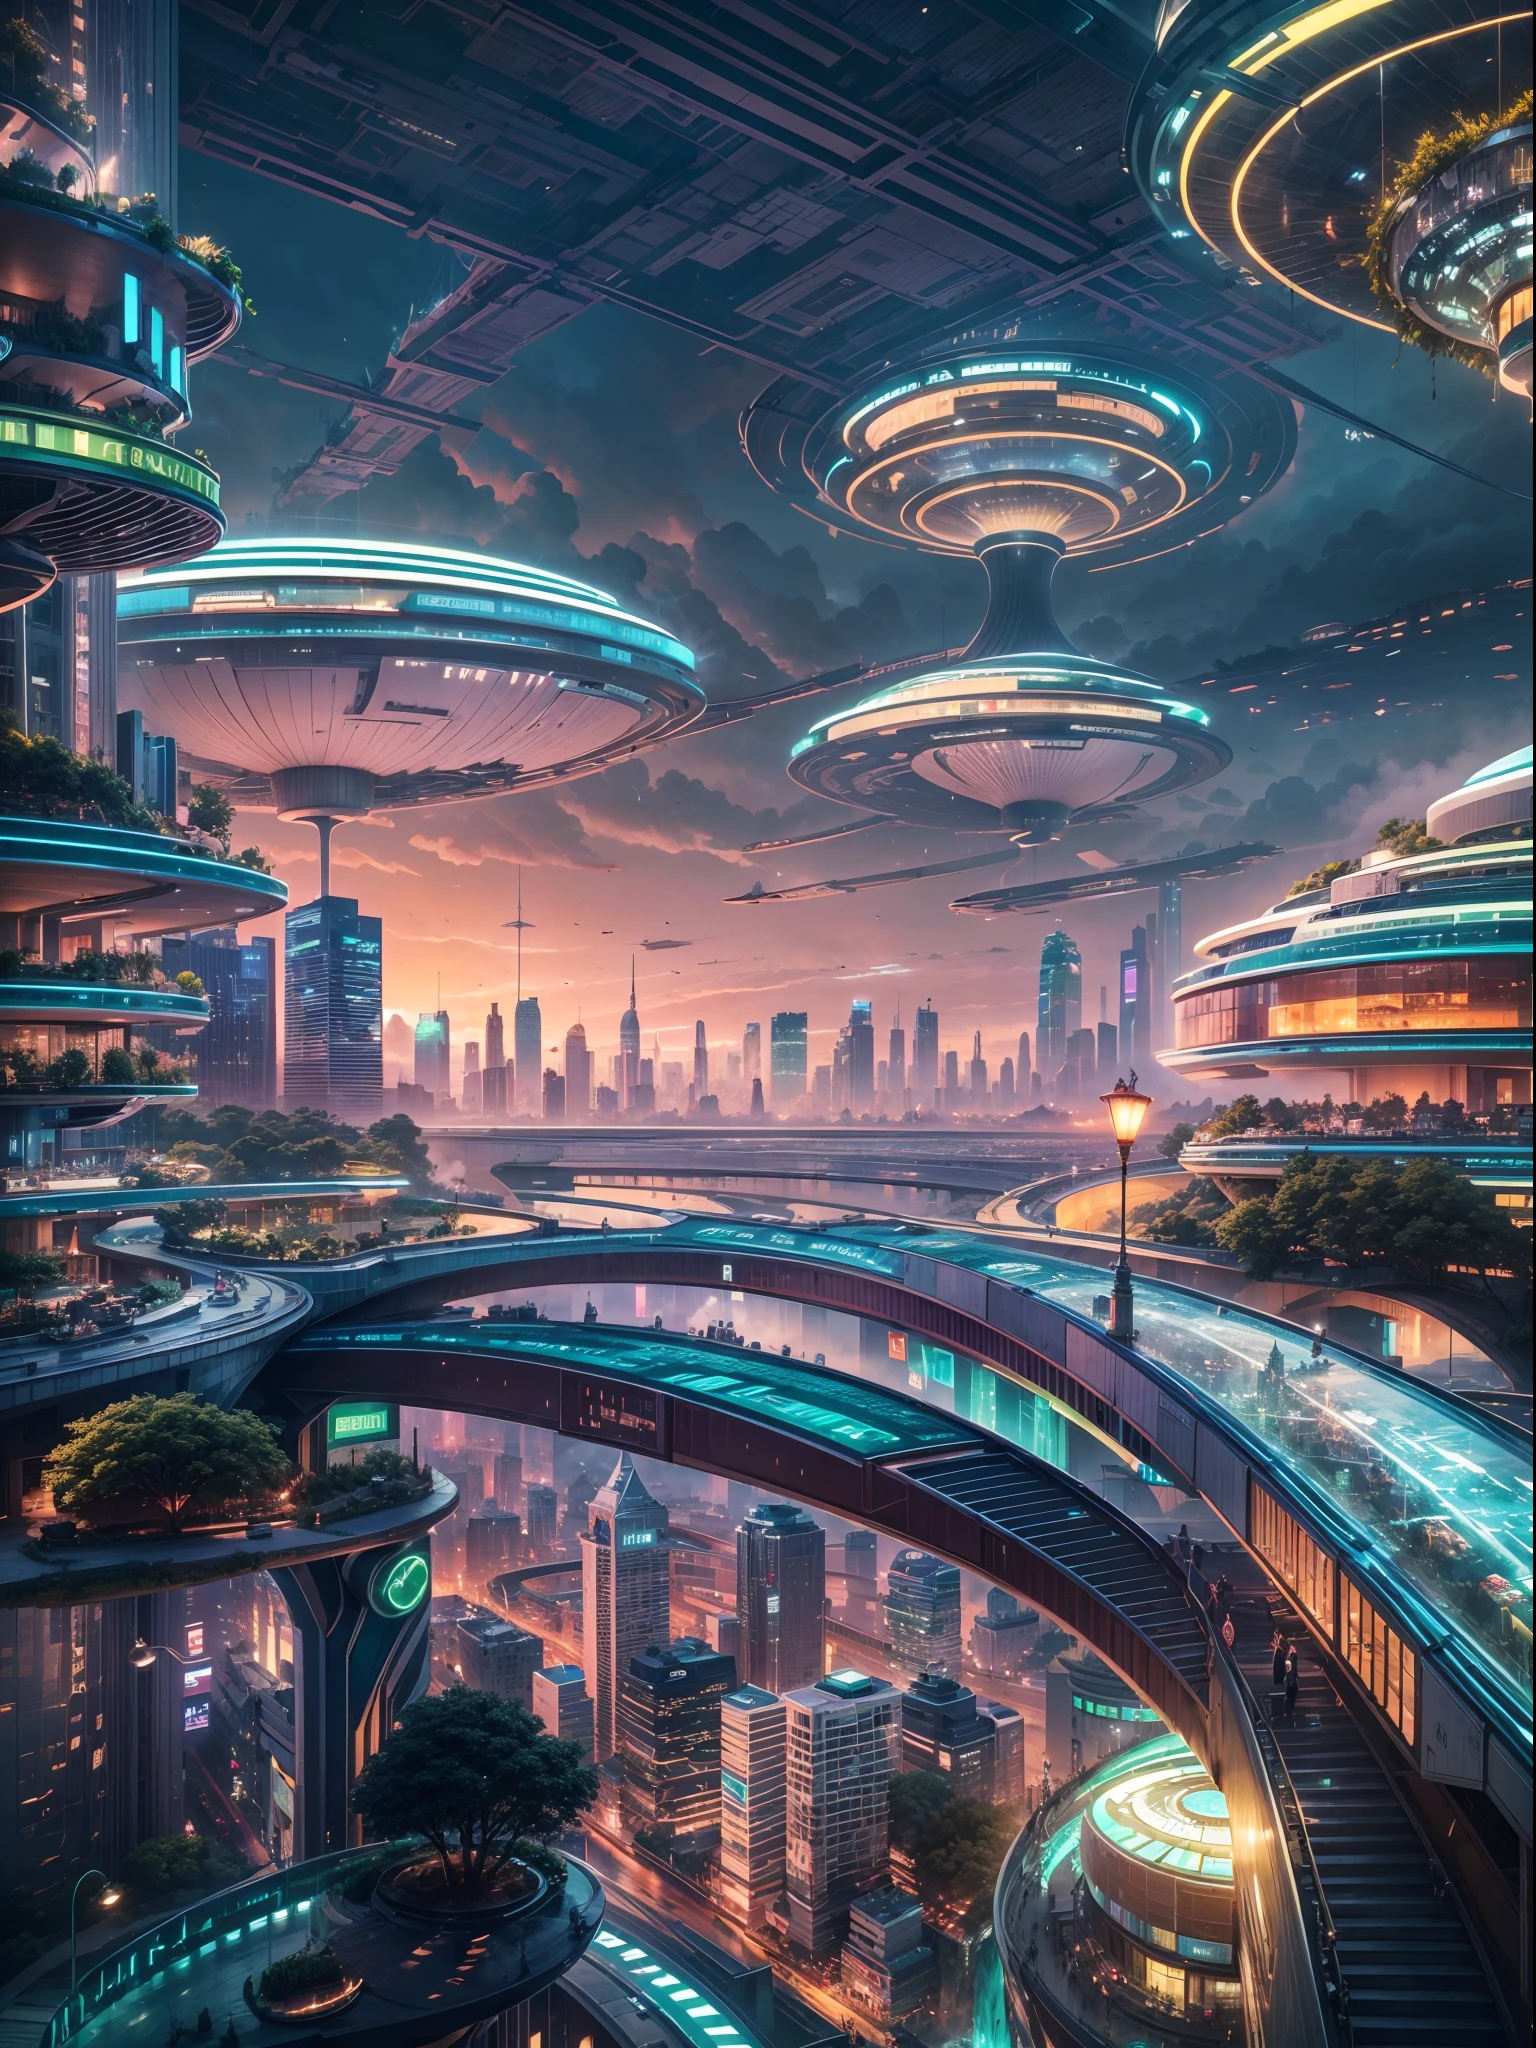 (最高品質,4K,8k,高解像度,傑作:1.2),超詳細,(現実的,photo現実的,photo-現実的:1.37),未来的な水上都市,未来の技術,巨大なハイテクな平らなプラットフォーム上の都市,飛行船,空に浮かぶ,未来都市,small 飛行船 around,ハイテク半球形プラットフォーム,カラフルなライト,高度なアーキテクチャ,近代的な建物,高層ビル,雲に届く,畏敬の念を抱かせる景色,都市景観,印象的なデザイン,自然とのシームレスな融合,ダイナミックで活気のある雰囲気,未来の交通システム,ホバリング車両,透明な通路,豊かな緑,空中庭園,滝,壮大なスカイライン,水面に映る,輝く川,建築の革新,futuristic 高層ビル,透明なドーム,変わった形の建物,高架歩道,印象的なスカイライン,光るライト,未来の技術,ミニマリストデザイン,景色の良い展望台,全景,雲を突き抜ける塔,鮮やかな色彩,壮大な日の出,壮大な夕日,まばゆいばかりの光の展示,魔法のような雰囲気,未来の都市,都会のユートピア,贅沢なライフスタイル,革新的なエネルギー源,持続可能な発展,スマートシティテクノロジー,高度なインフラストラクチャ,静かな雰囲気,自然と技術の調和のとれた共存,畏敬の念を抱かせる街並み,前例のない都市計画,建物と自然のシームレスなつながり,ハイテク都市,最先端の工学の驚異,都市生活の未来,先見性のある建築コンセプト,エネルギー効率の高い建物,環境との調和,雲の上に浮かぶ街,ユートピアの夢が現実になった,無限の可能性,高度な交通ネットワーク,グリーンエネルギーの統合,革新的な素材,印象的なホログラフィックディスプレイ,高度な通信システム,息を呑むような空中景観,平和で穏やかな環境,モダニズムの美学,天上の美しさ